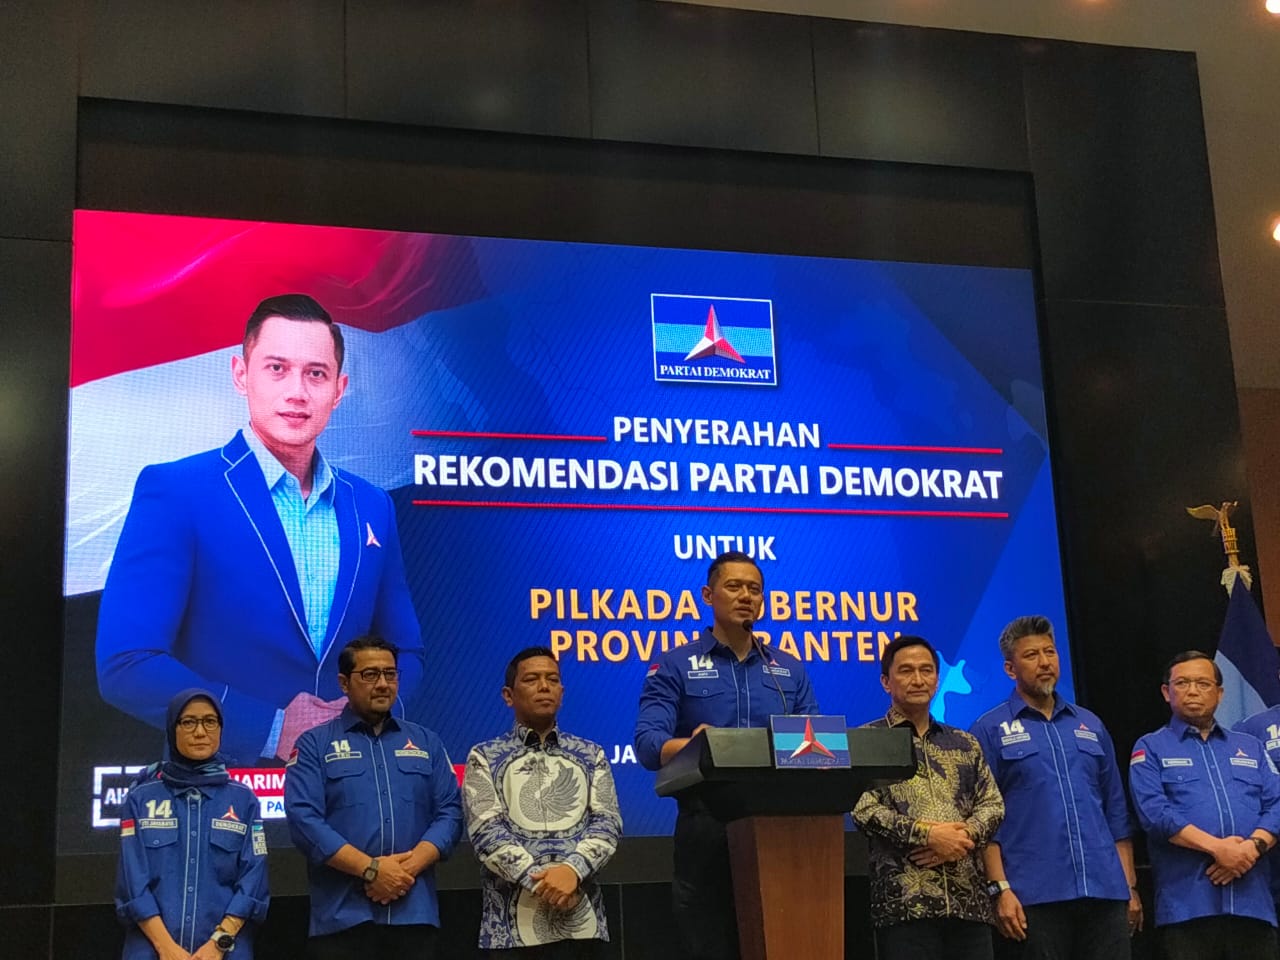 Demokrat Berseberangan dengan Golkar di Pilkada Banten, AHY Tegaskan KIM Tetap Solid